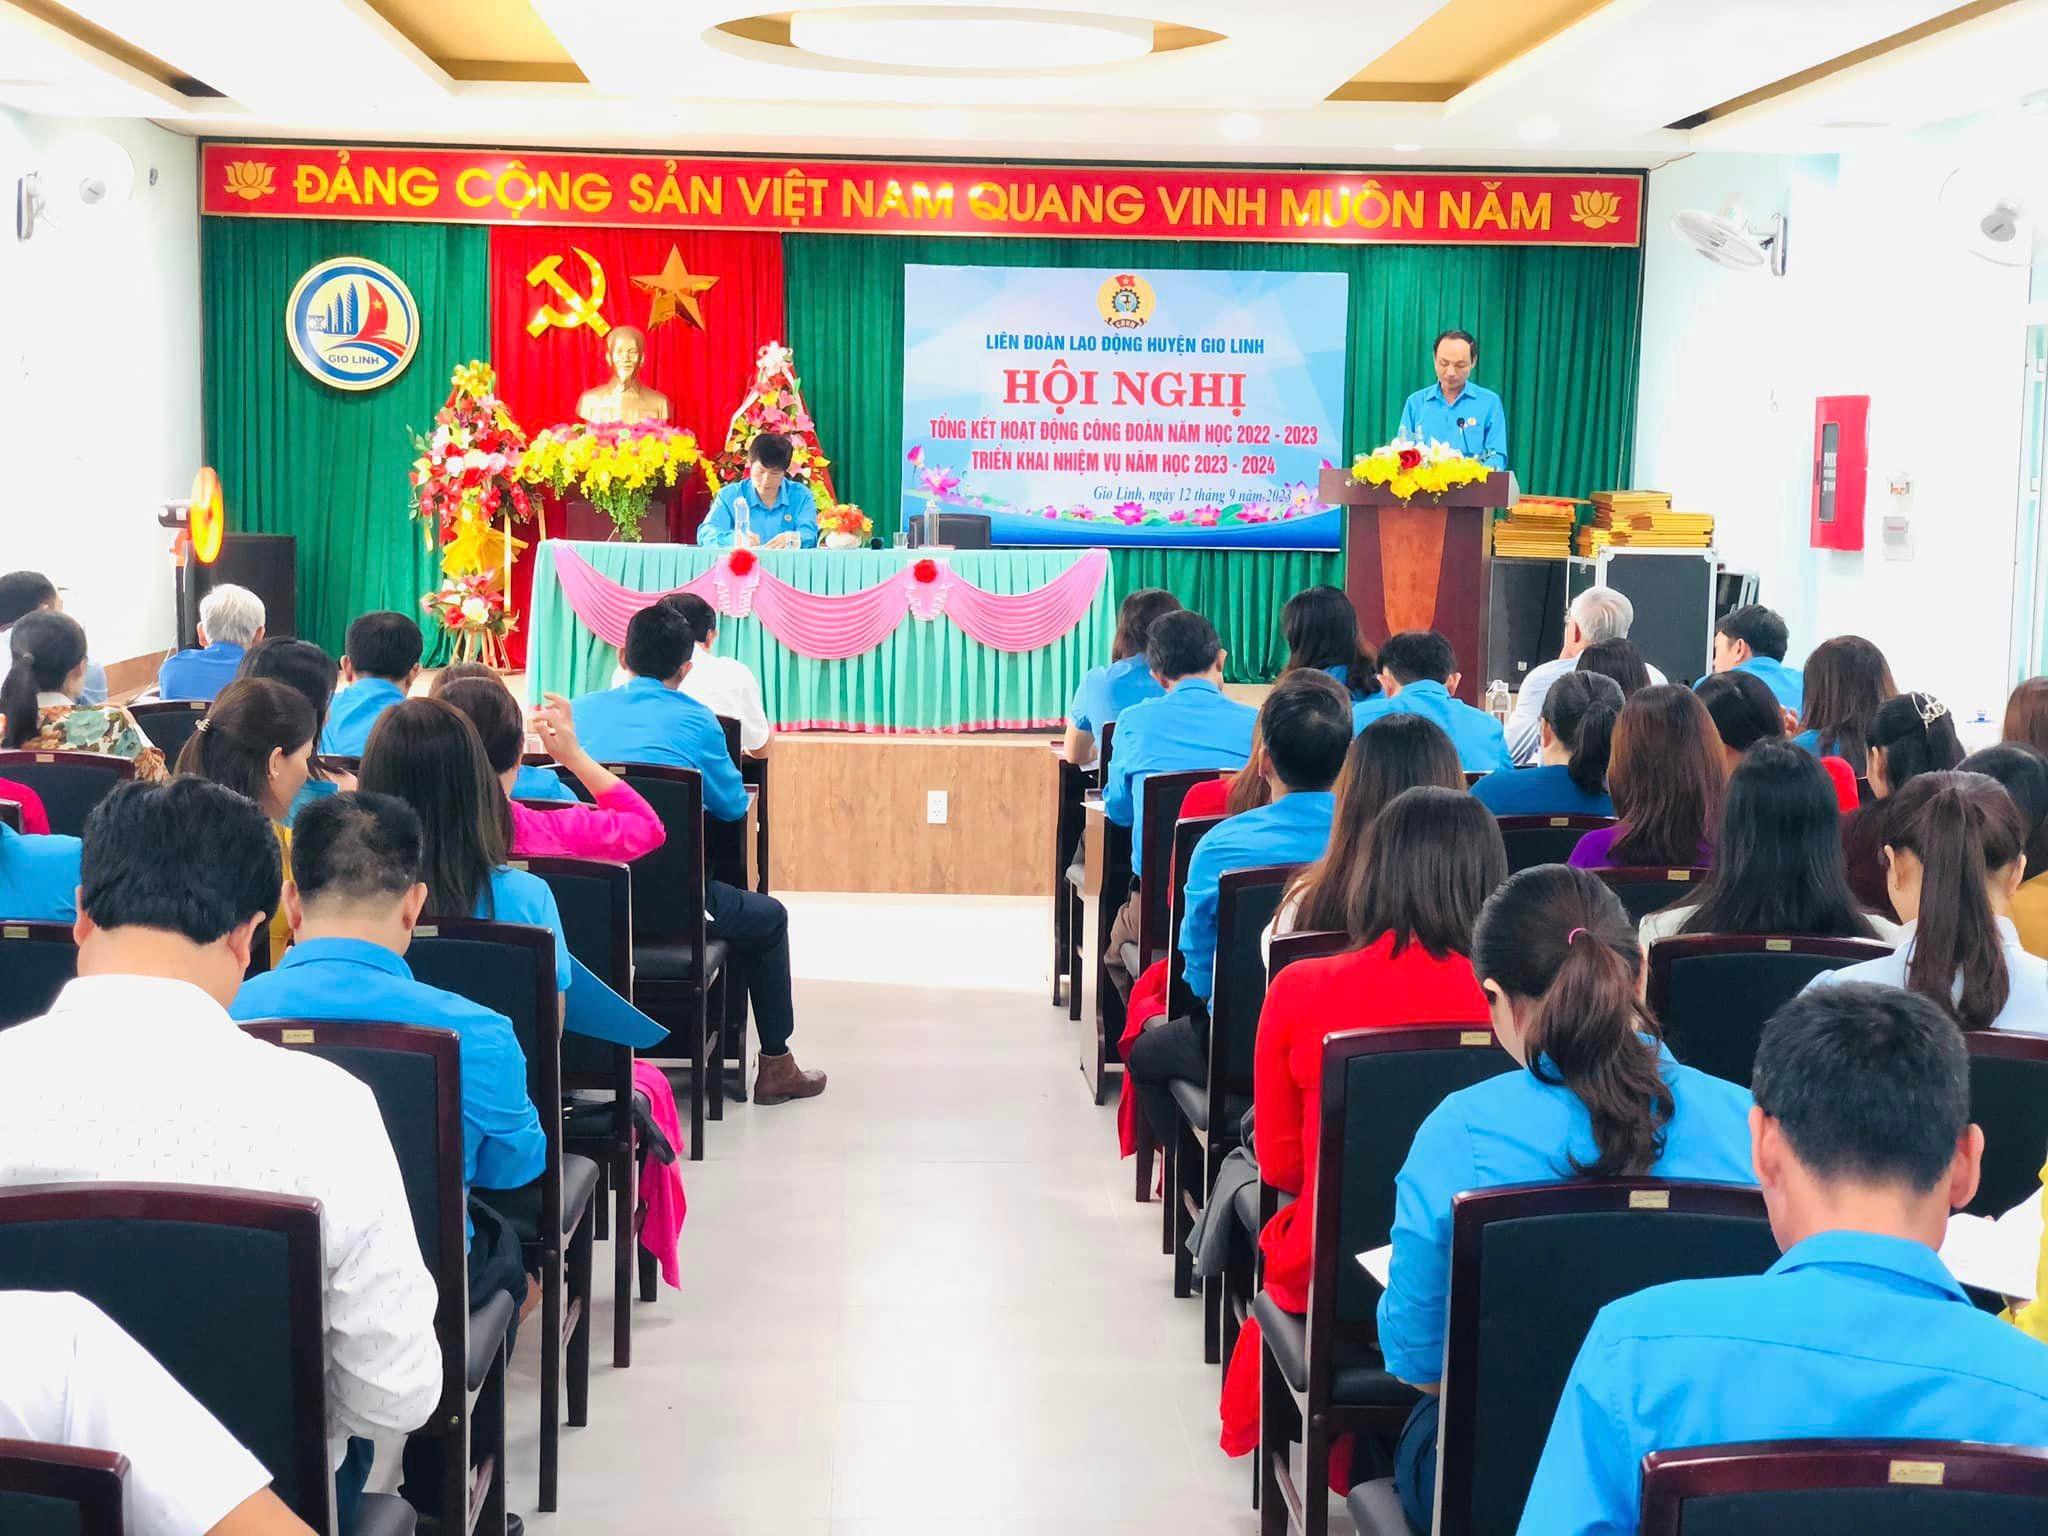 Liên đoàn lao động huyện Gio Linh tổng kết hoạt động Công đoàn năm học 2022 - 2023; triển khai phương...